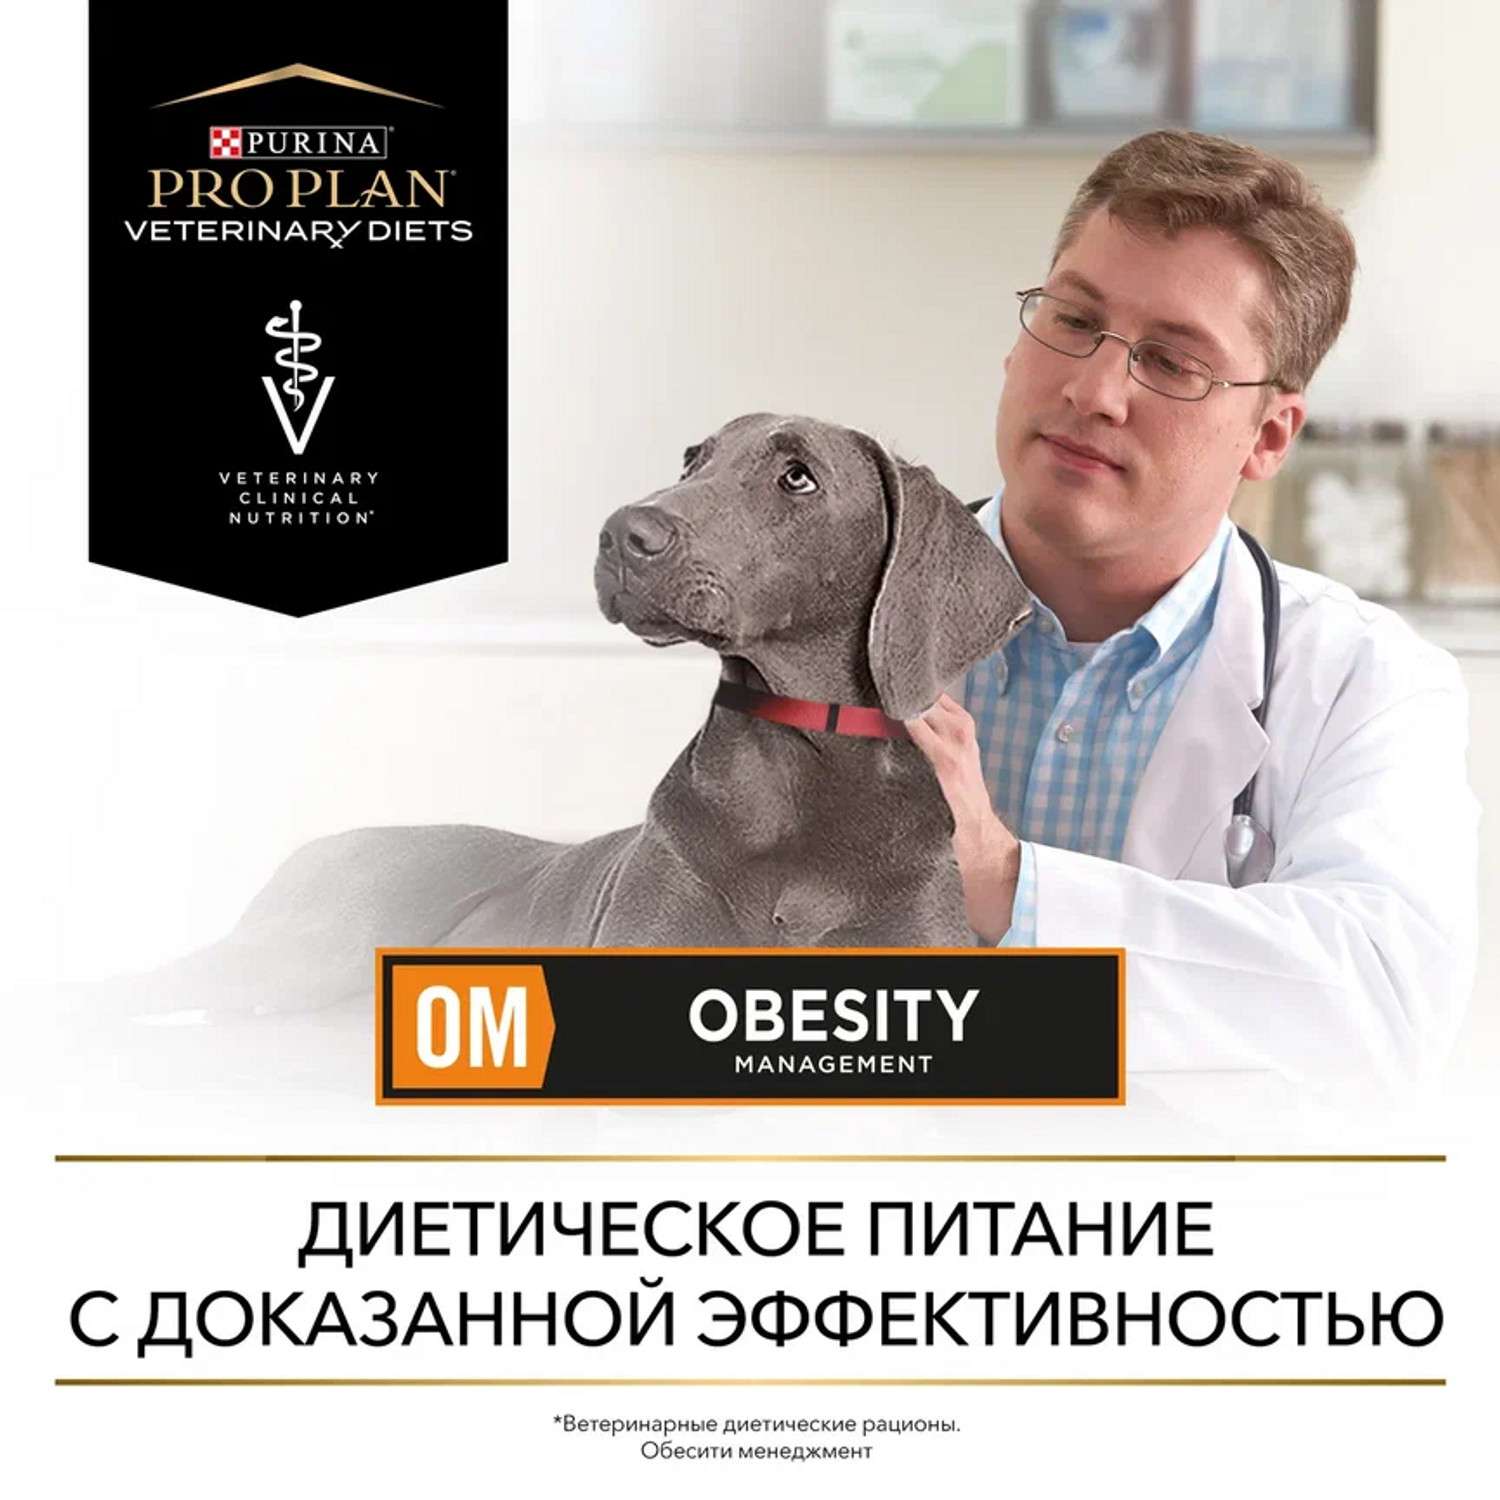 Корм для собак Purina Pro Plan Veterinary diets OM при ожирении консервированный 400г - фото 10